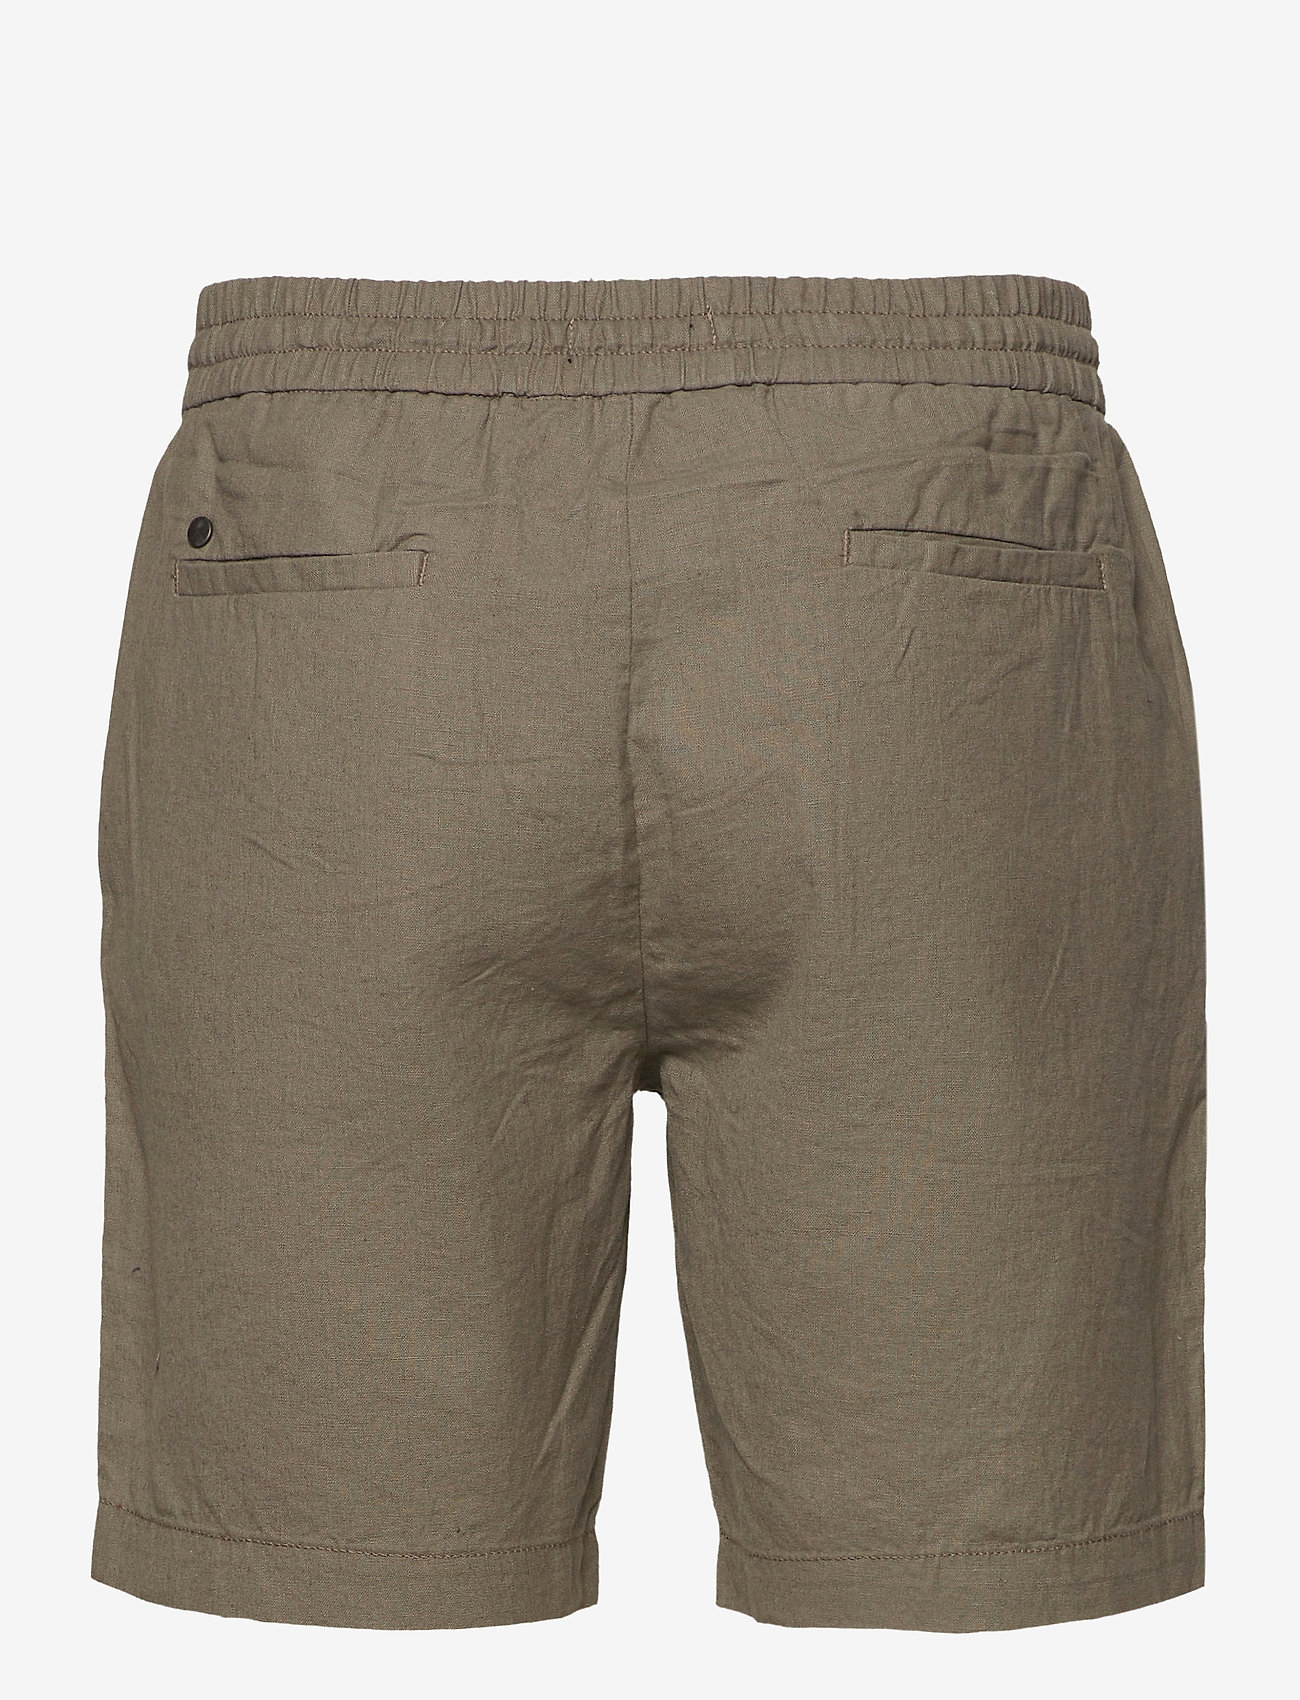 Clean Cut Copenhagen - Barcelona Cotton / Linen Shorts - linshorts - dusty green - 1